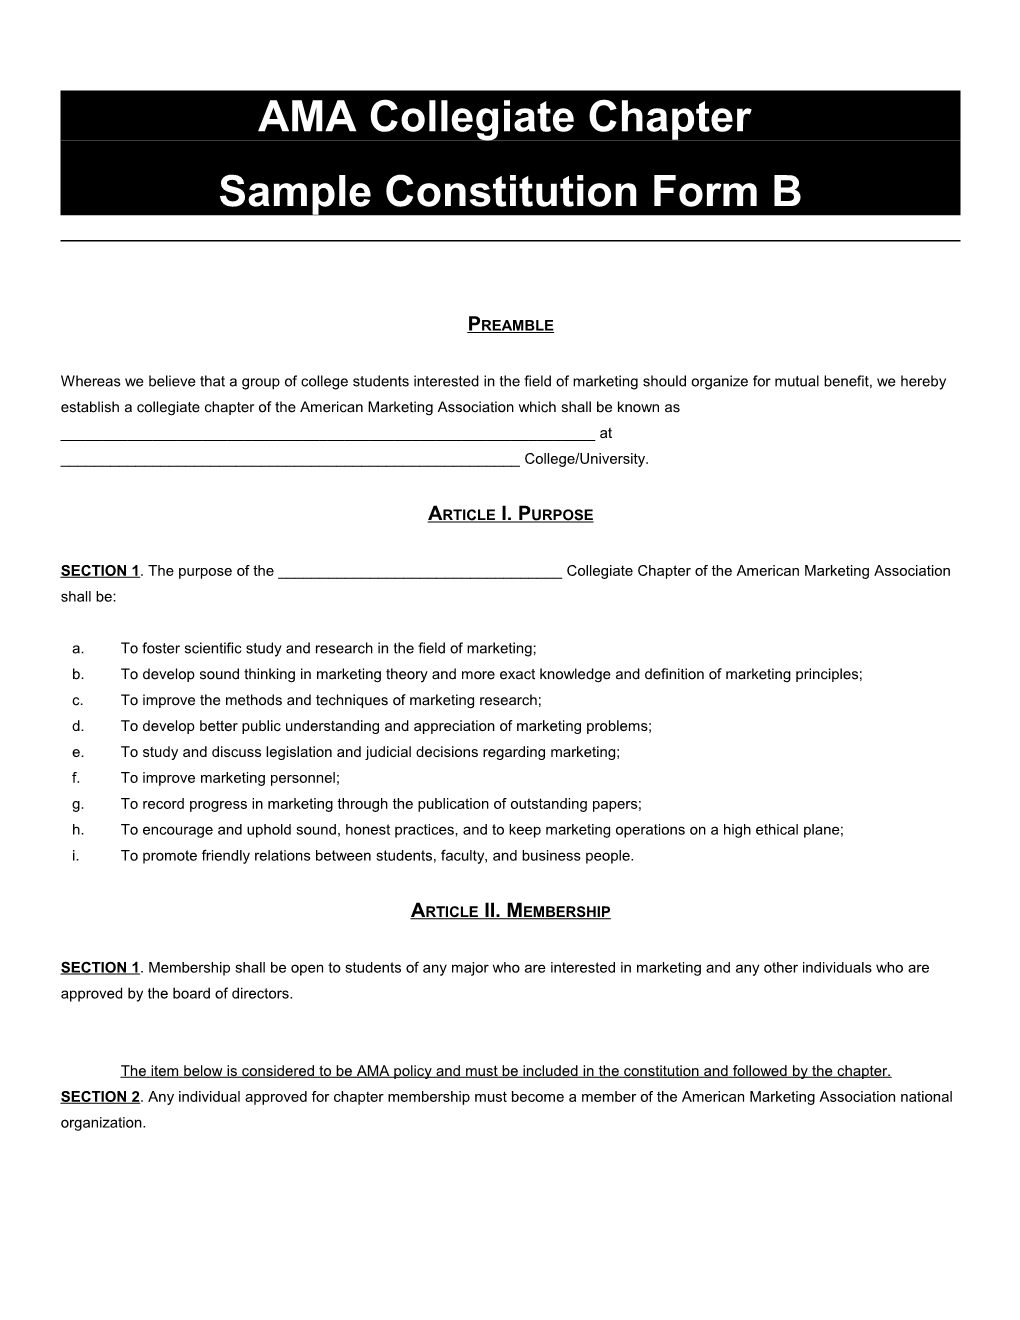 AMA Collegiate Chapter Sample Constitution s1